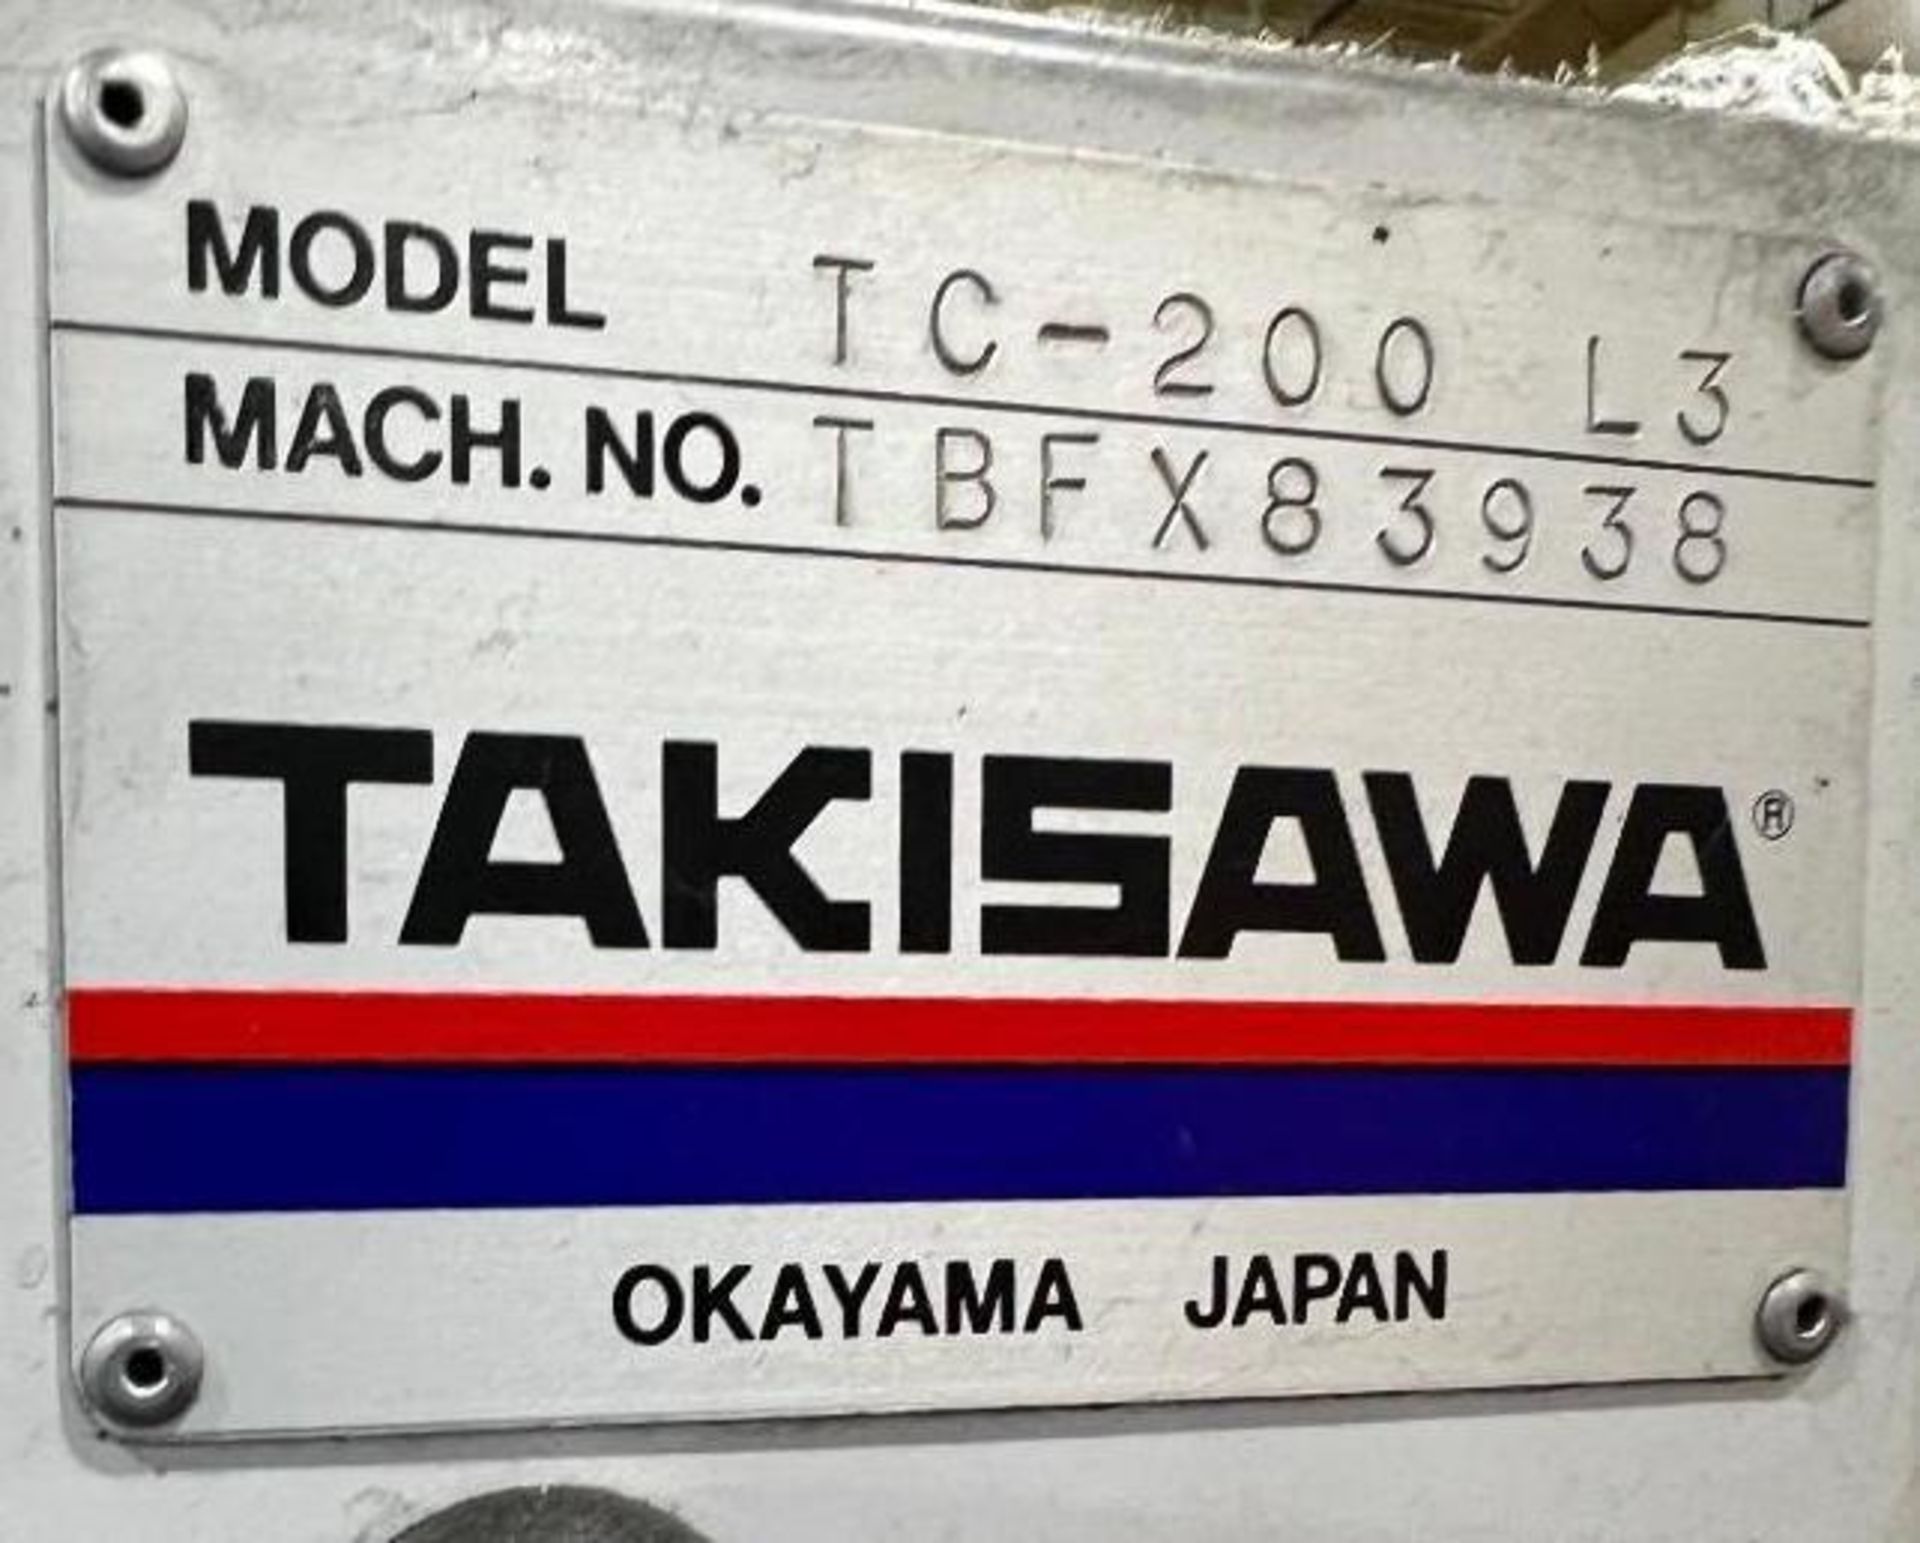 Takisawa TC-200 L3 CNC Turning Center - Image 8 of 8